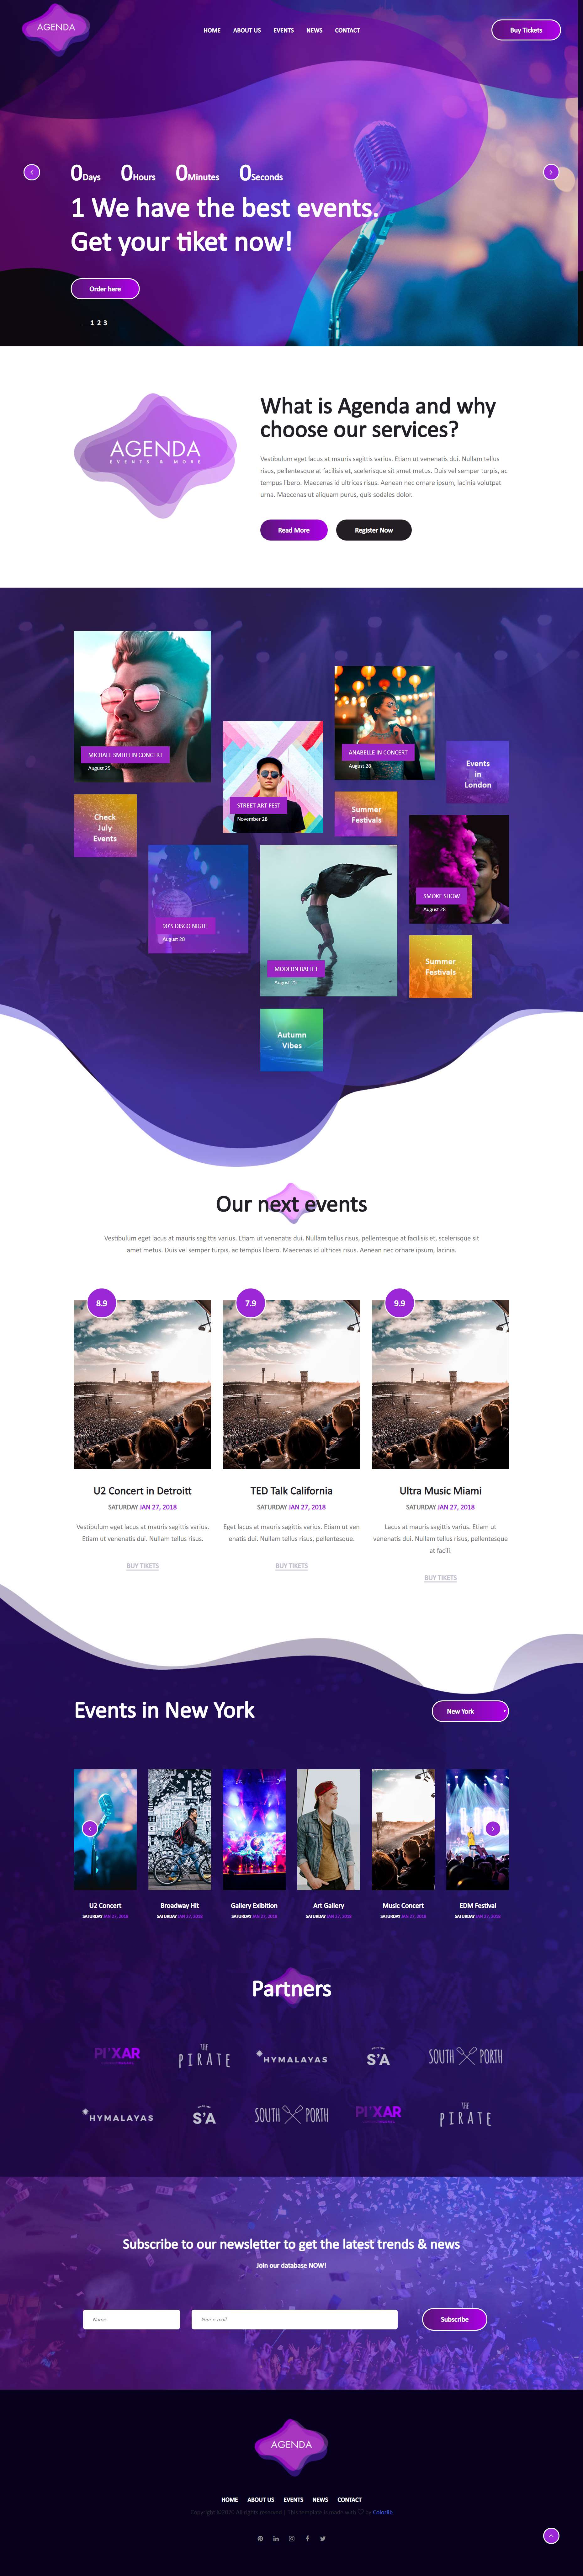 紫色欧美风格响应式大型娱乐活动网页模板